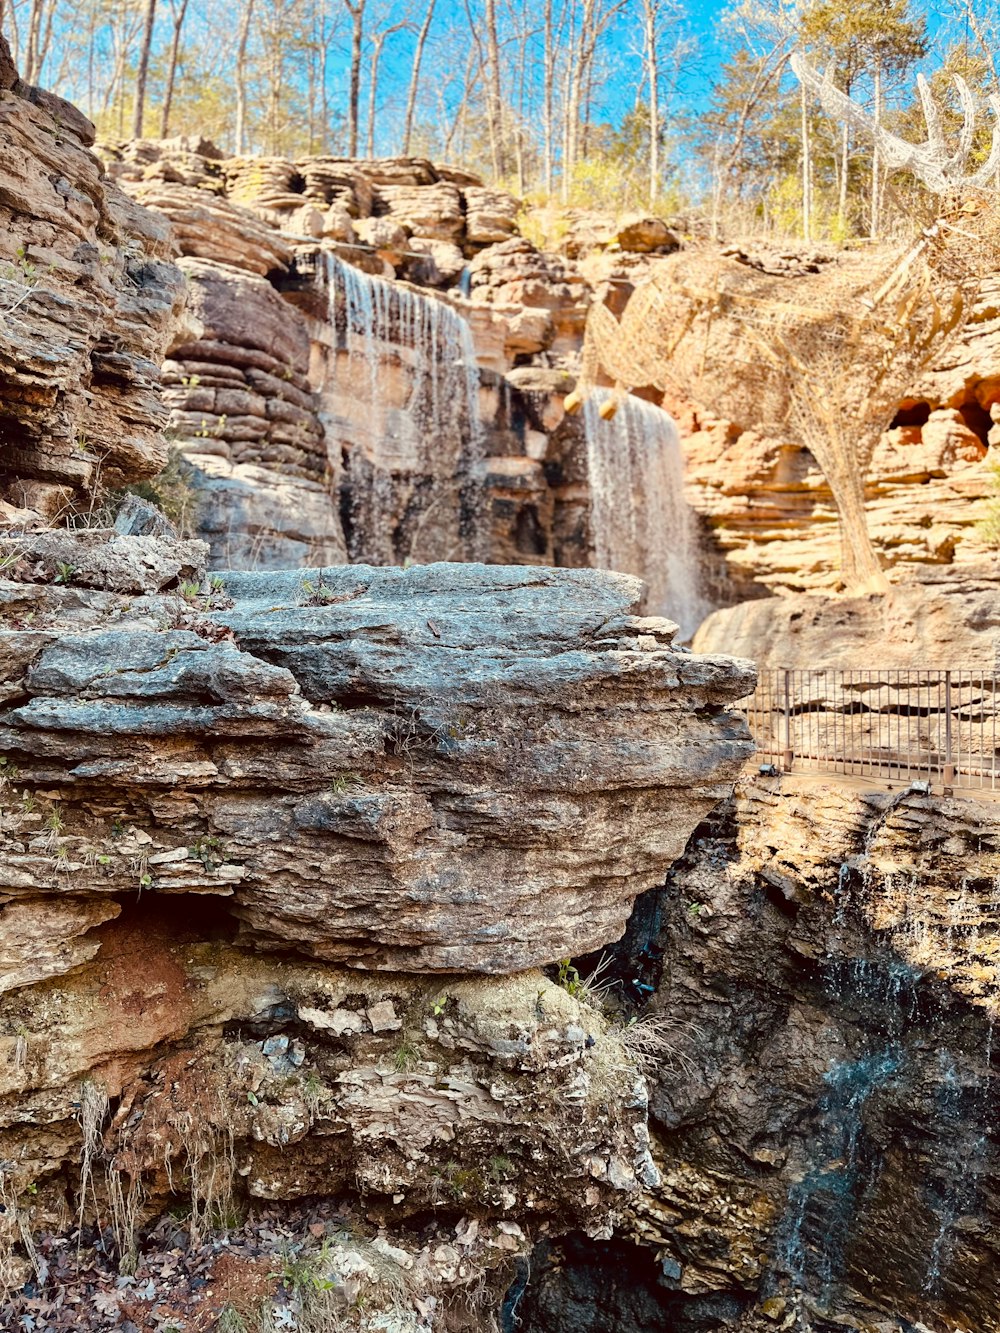 une cascade au milieu d’une zone rocheuse